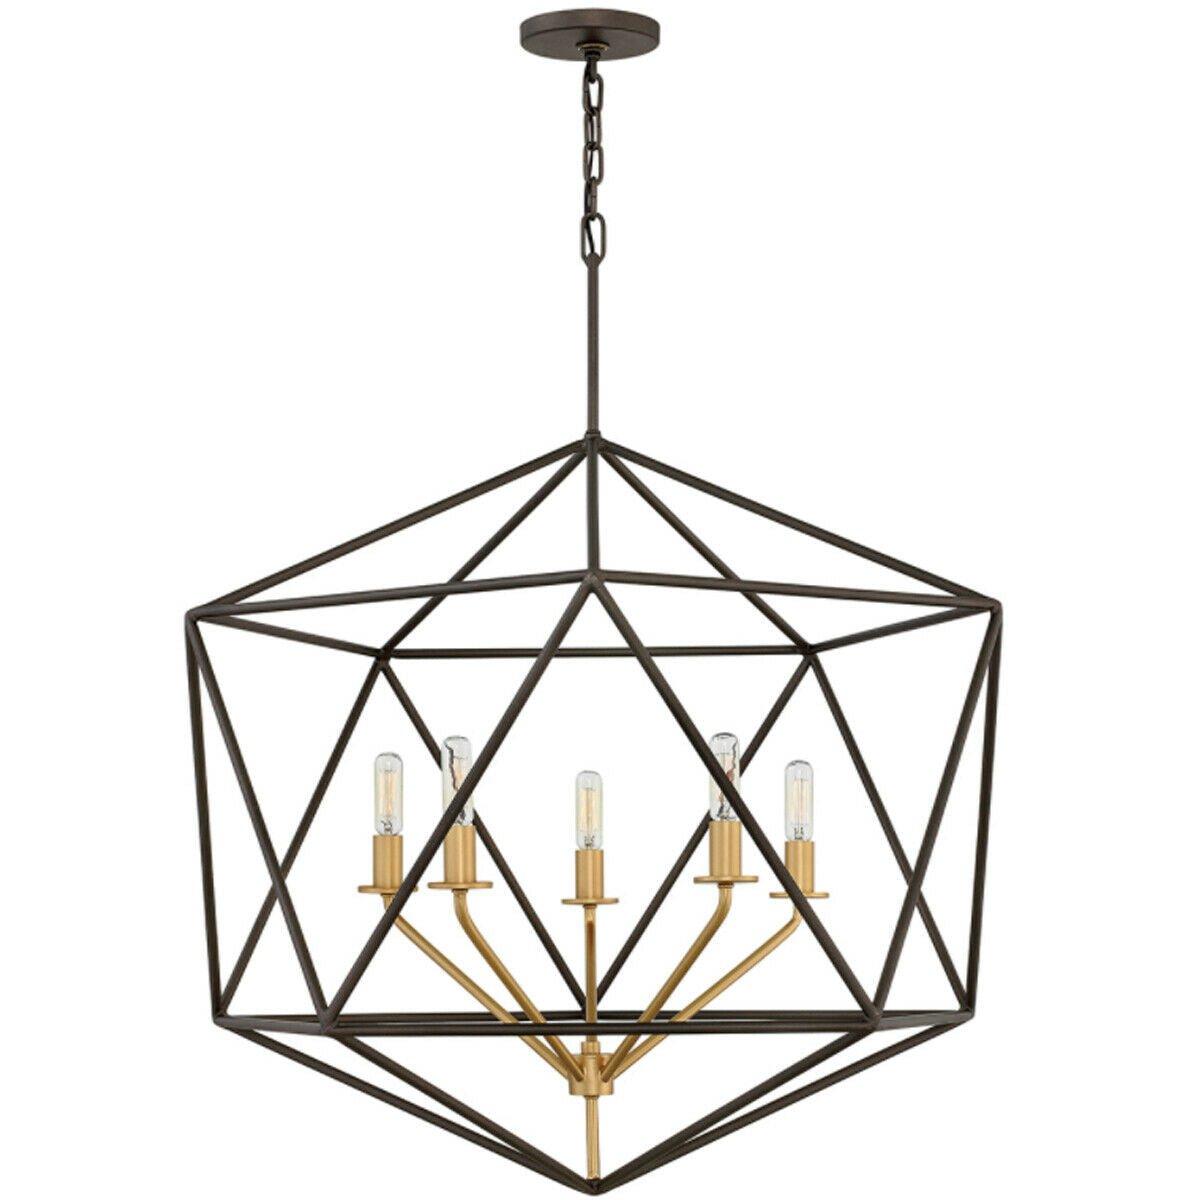 5 Bulb Chandelier Gold Coloured Lamp Holders Metallic Matte Bronze LED E14 60W